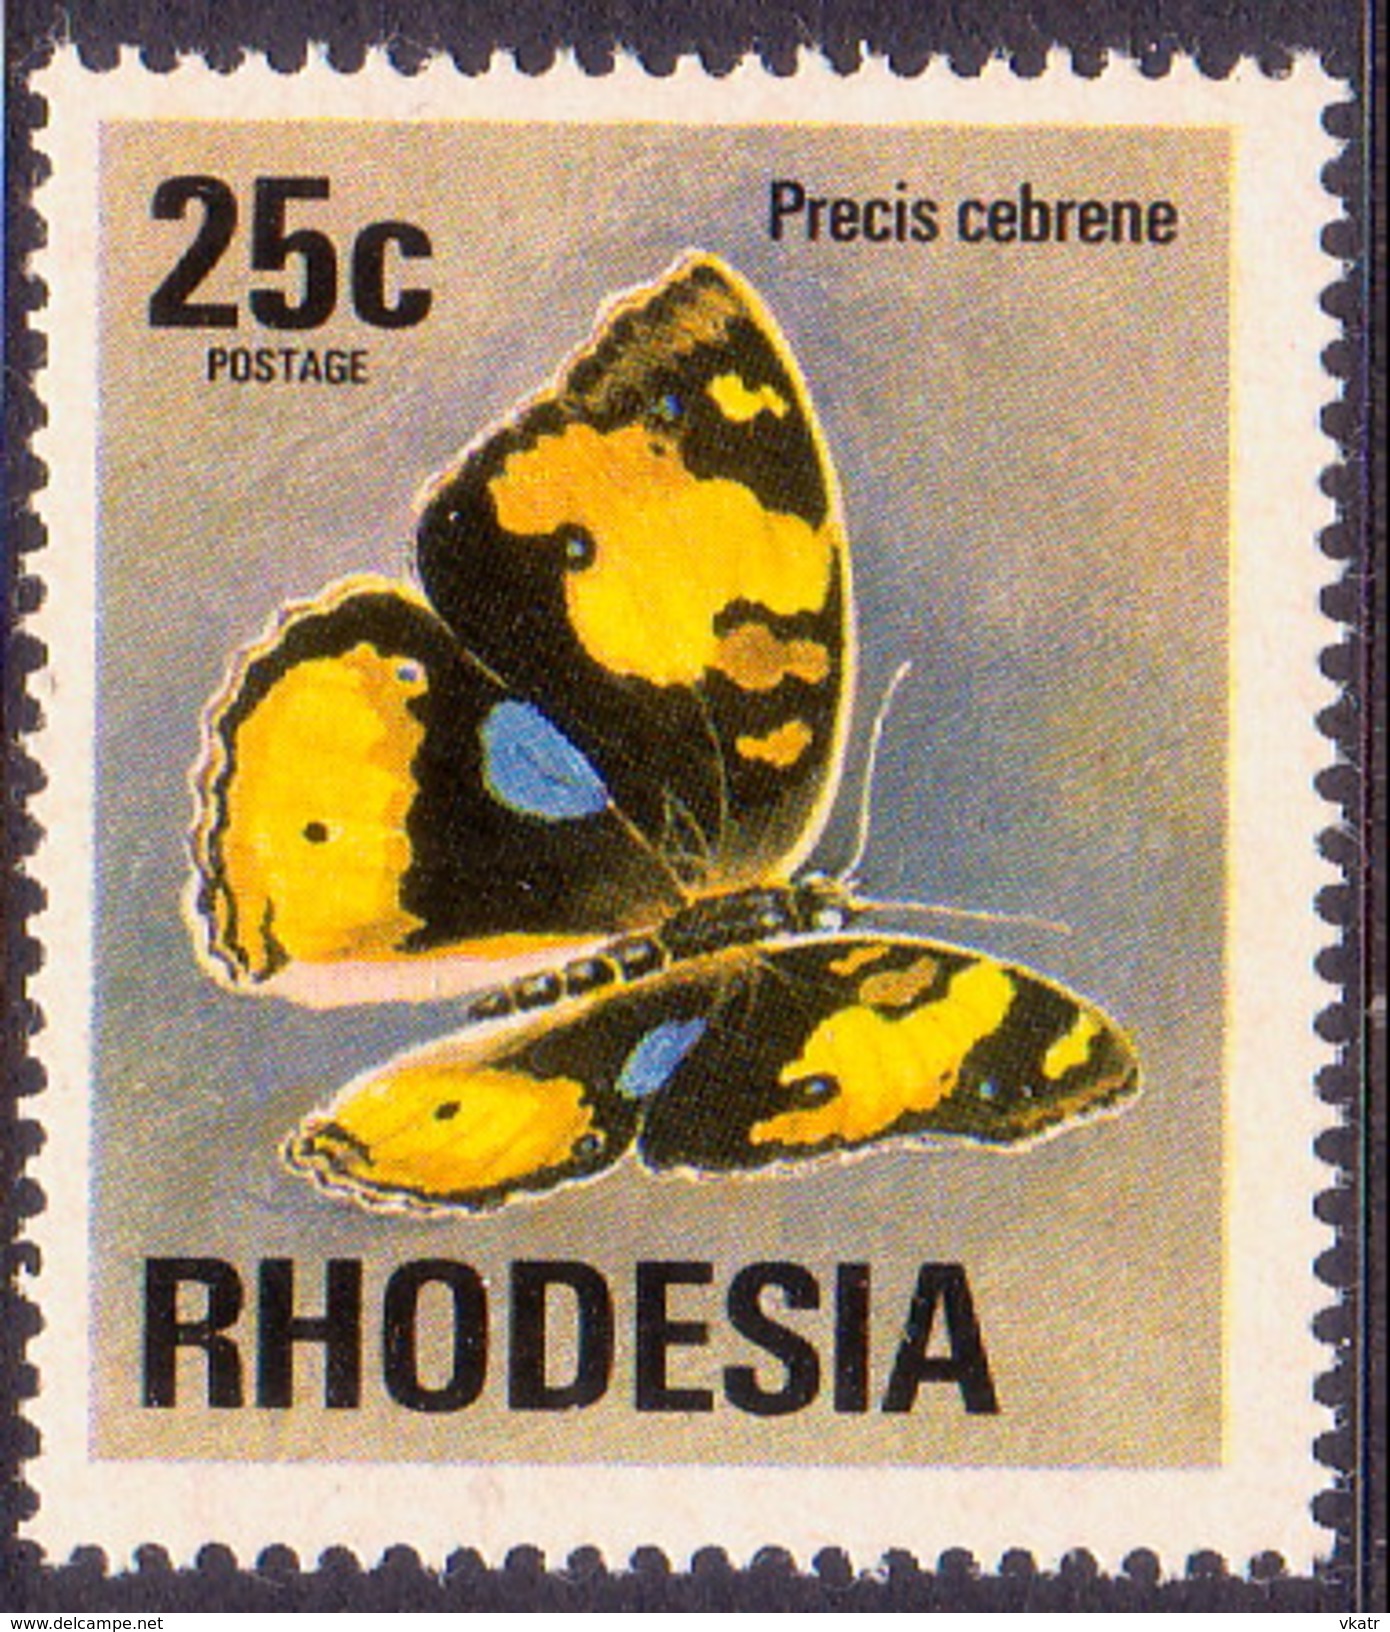 RHODESIA 1974 SG #505 25c MNH Butterfly - Rhodesia (1964-1980)